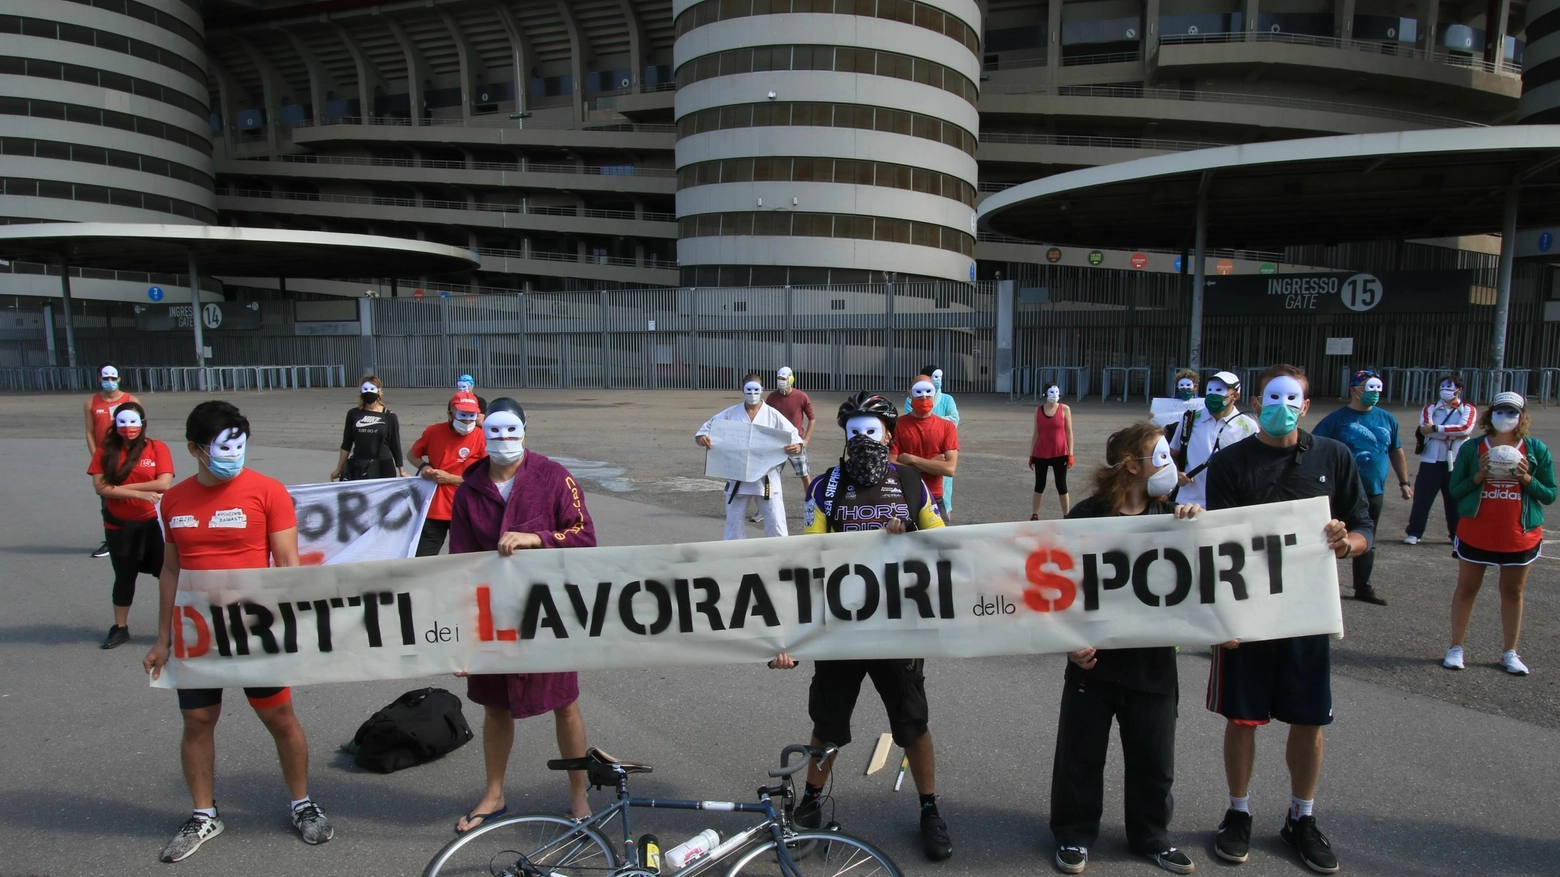 Protesta lavoratori dello sport a San Siro